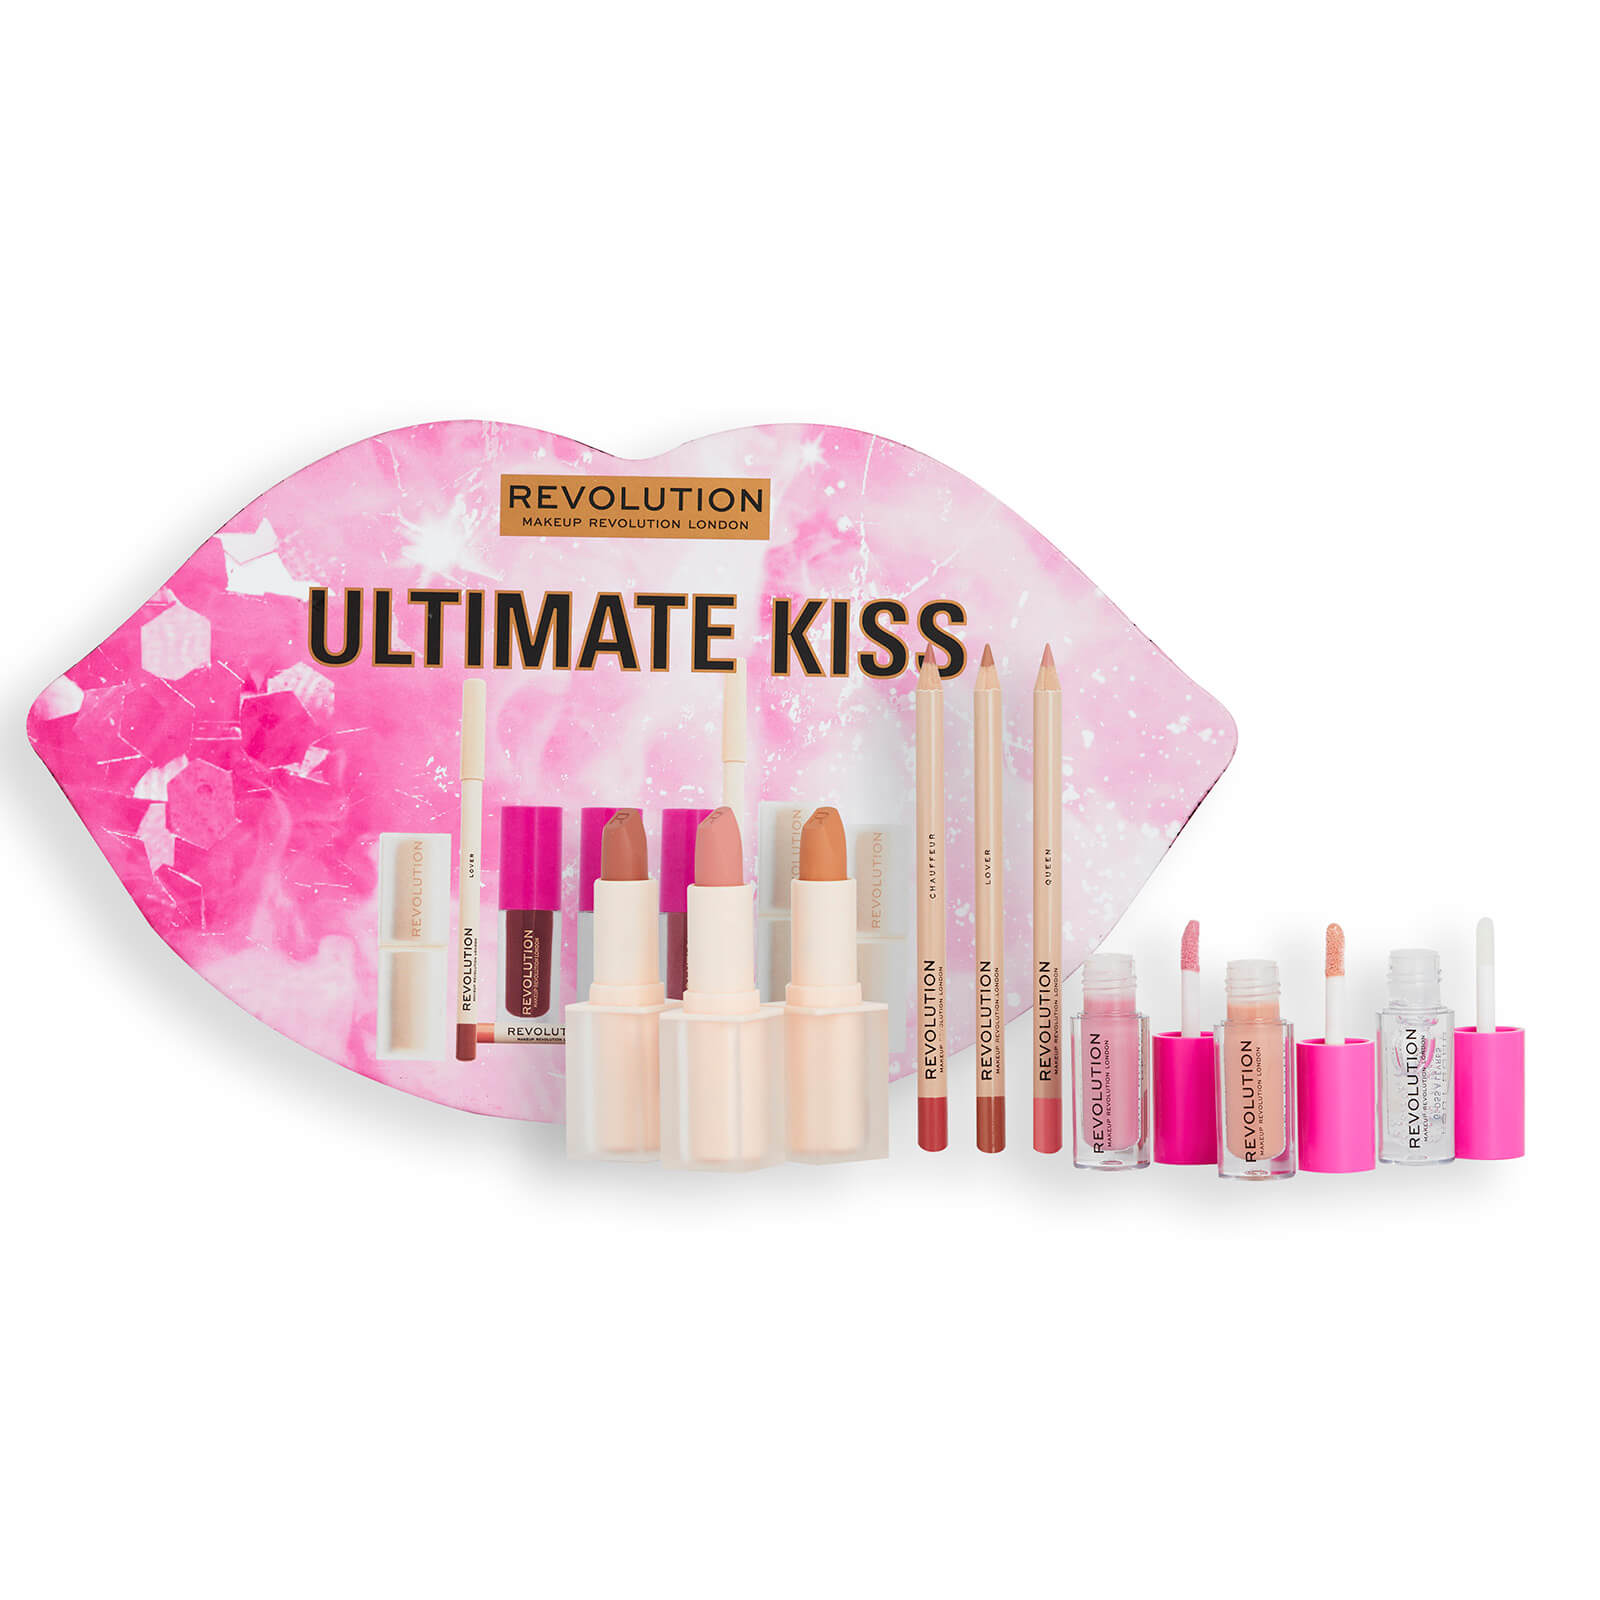 Shop Revolution Ultimate Kiss Gift Set